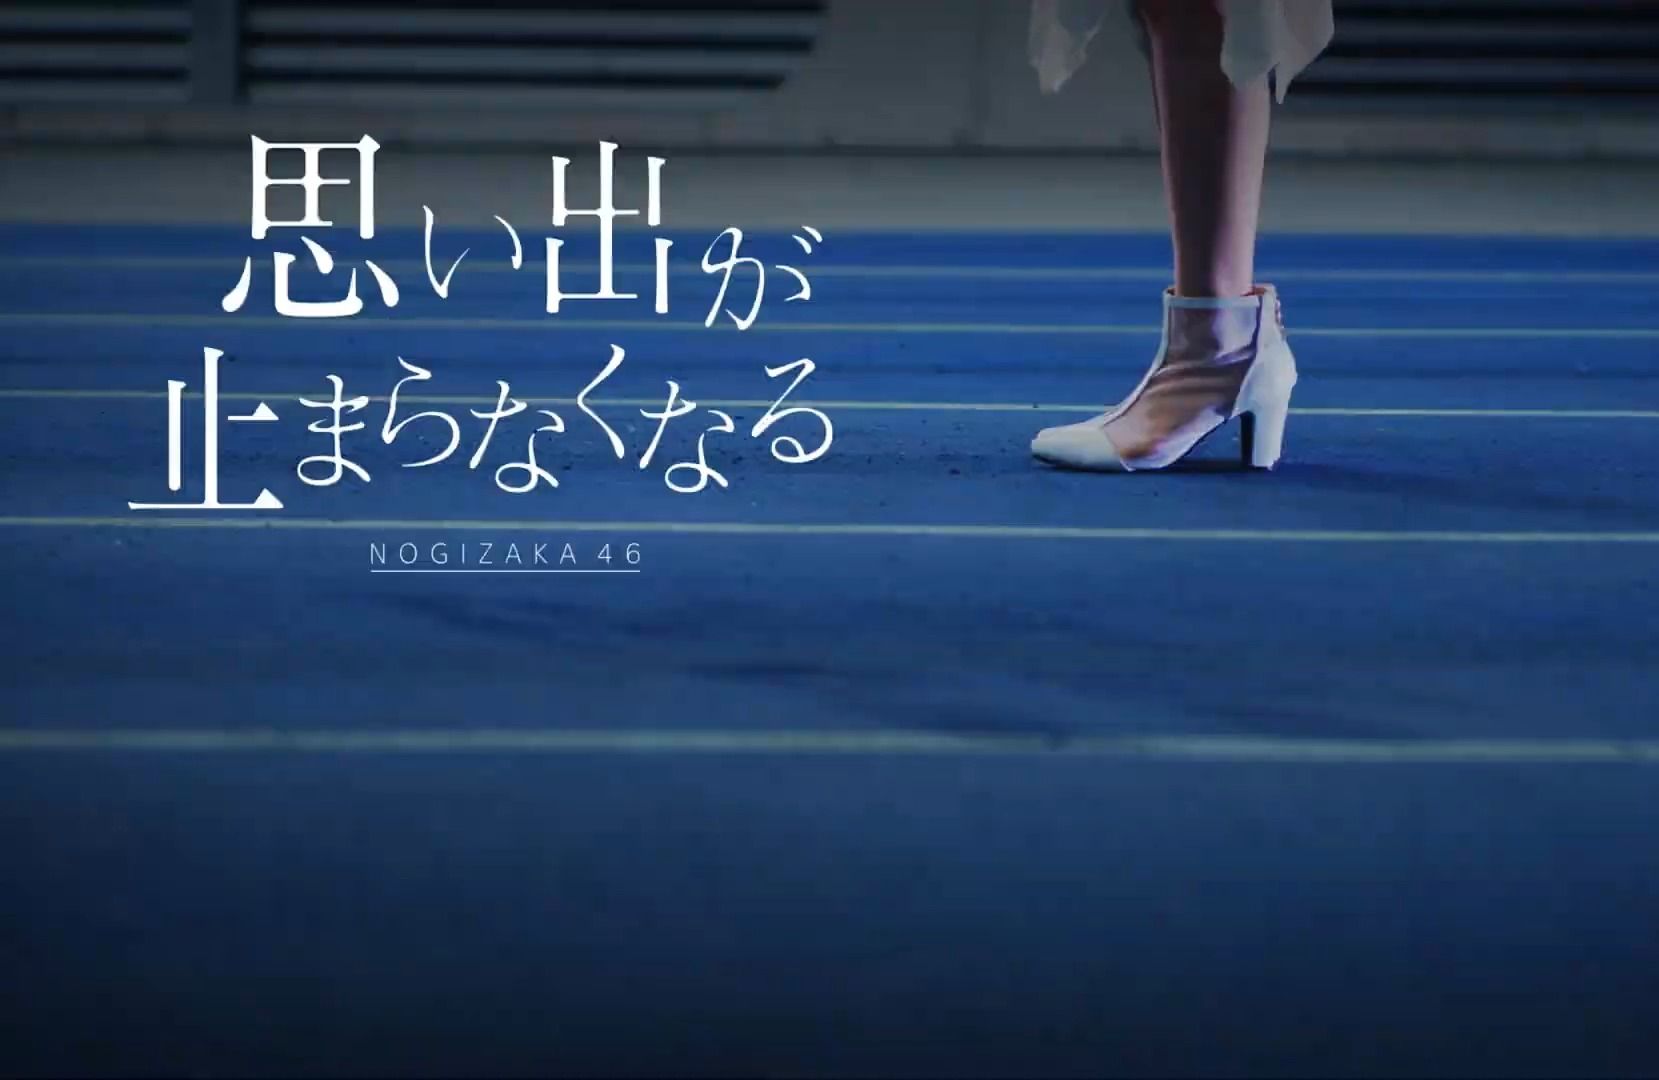 乃木坂46 34单 under曲 「思い出が止まらなくなる」PV